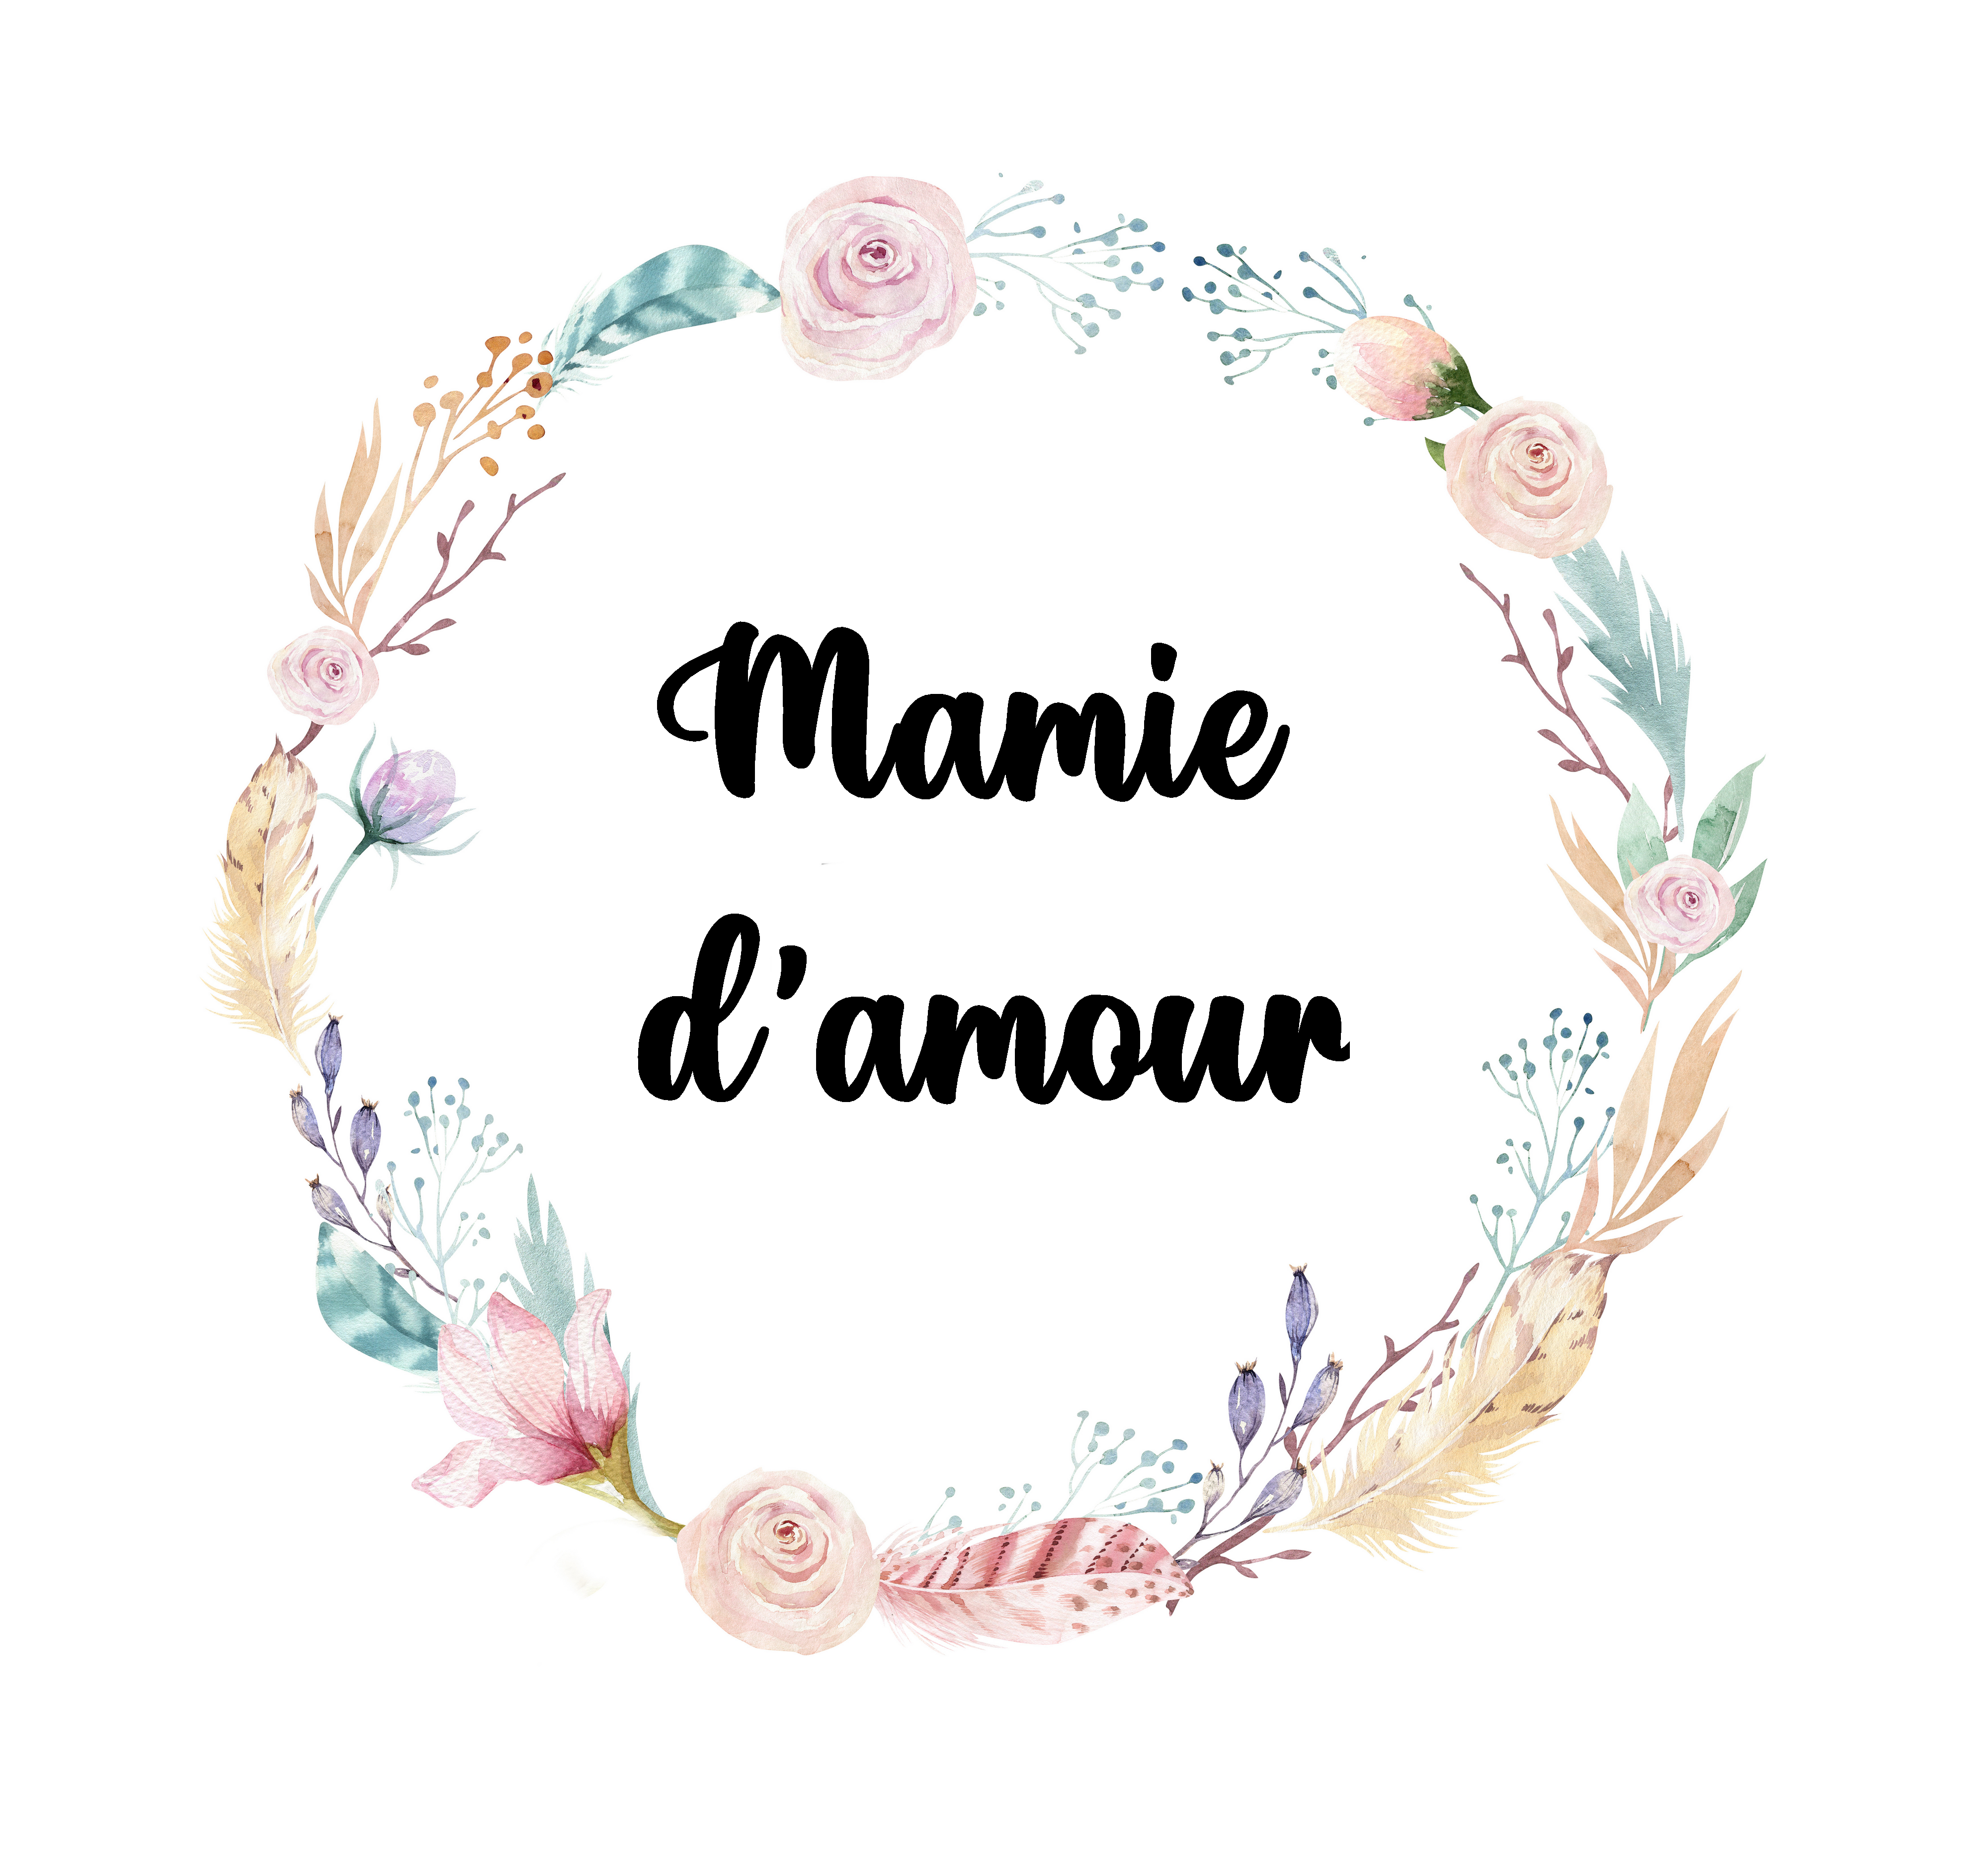 Pochette Mamie d'amour